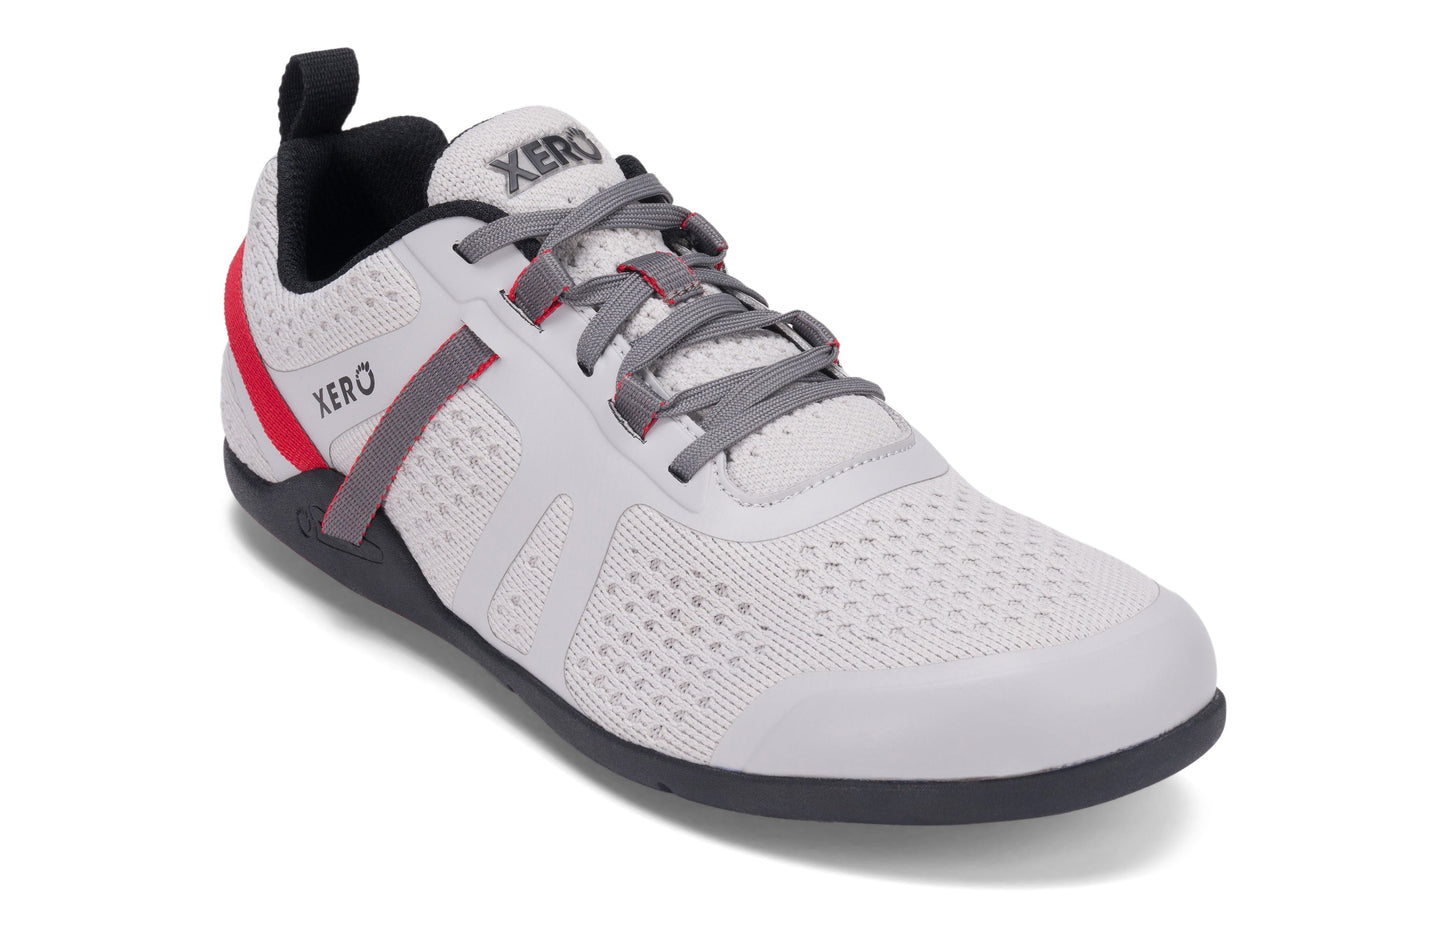 Xero Shoes Prio Neo Mens barfods performance træningssko til mænd i farven quite gray, vinklet